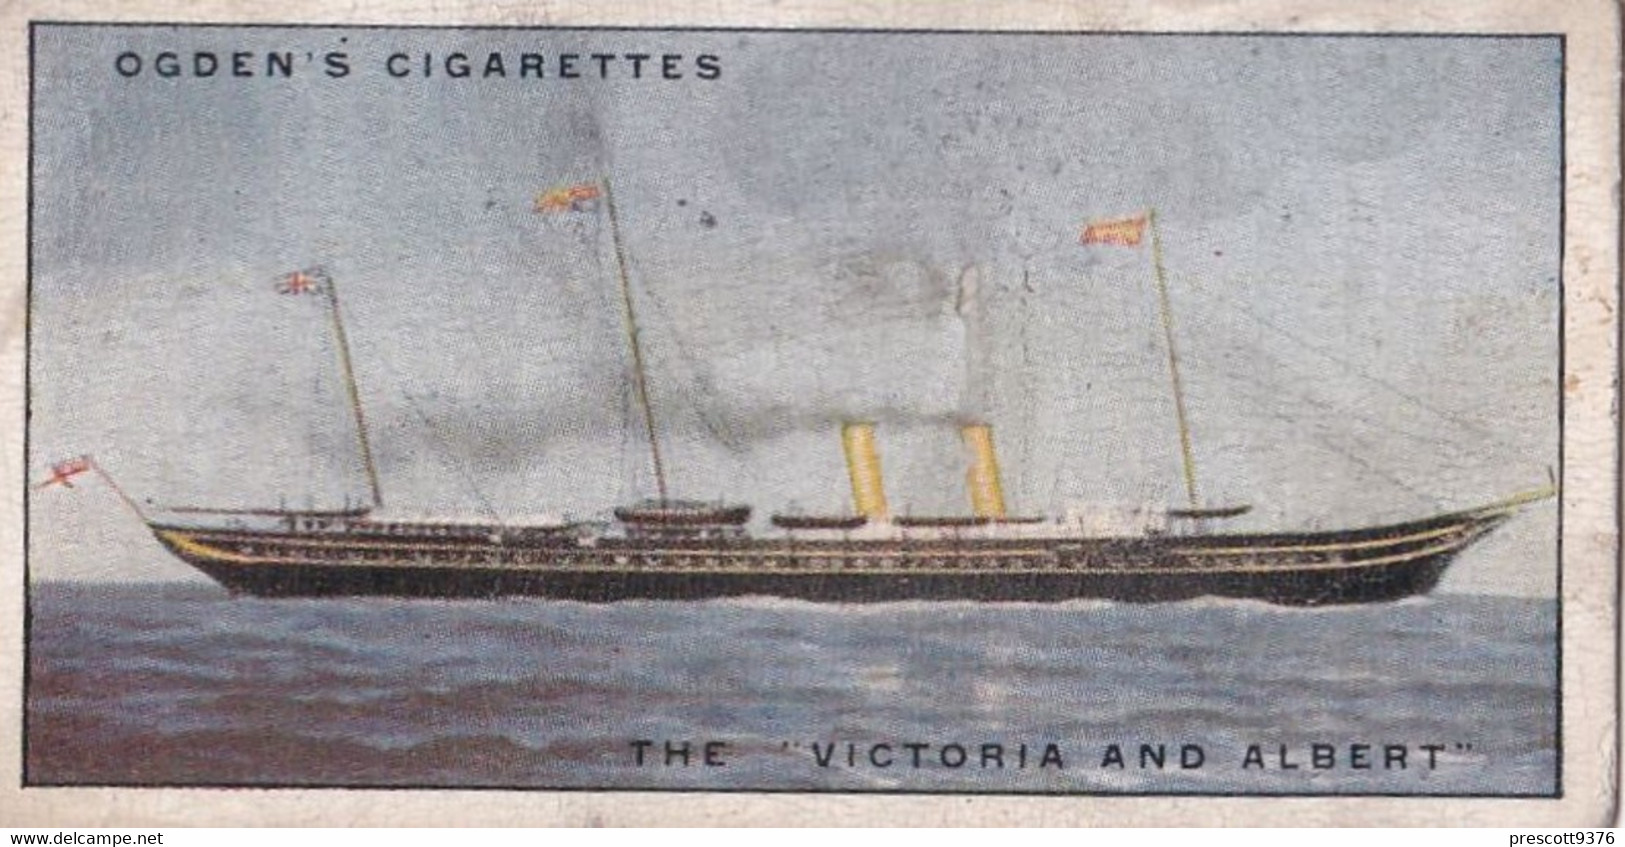 Yachts & Motor Boats 1931 - 47 The Victoria & Albert - Ogdens  Cigarette Card - Original  - Ships - Sealife - Ogden's